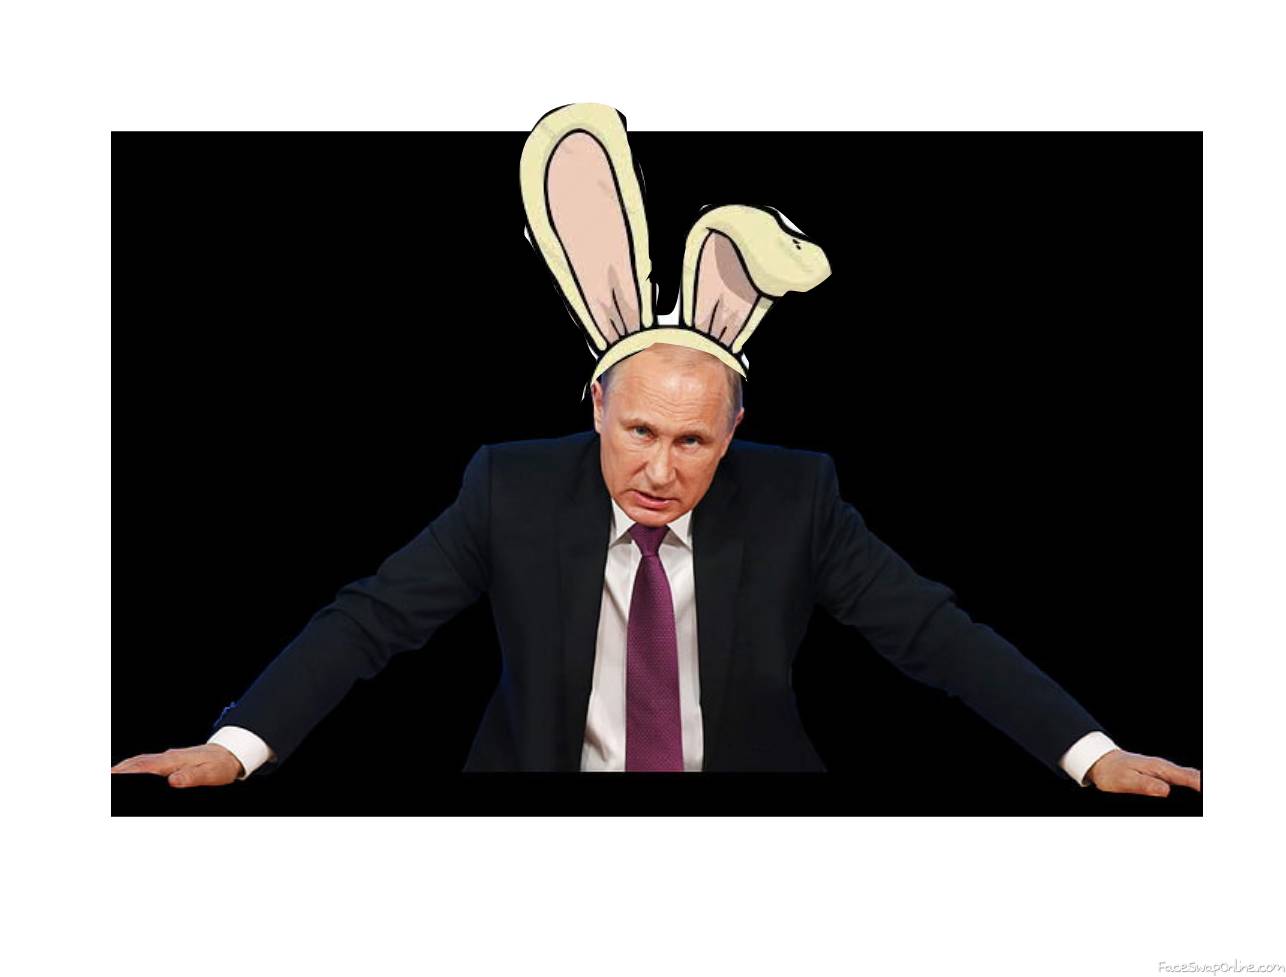 Putin Rabbit III